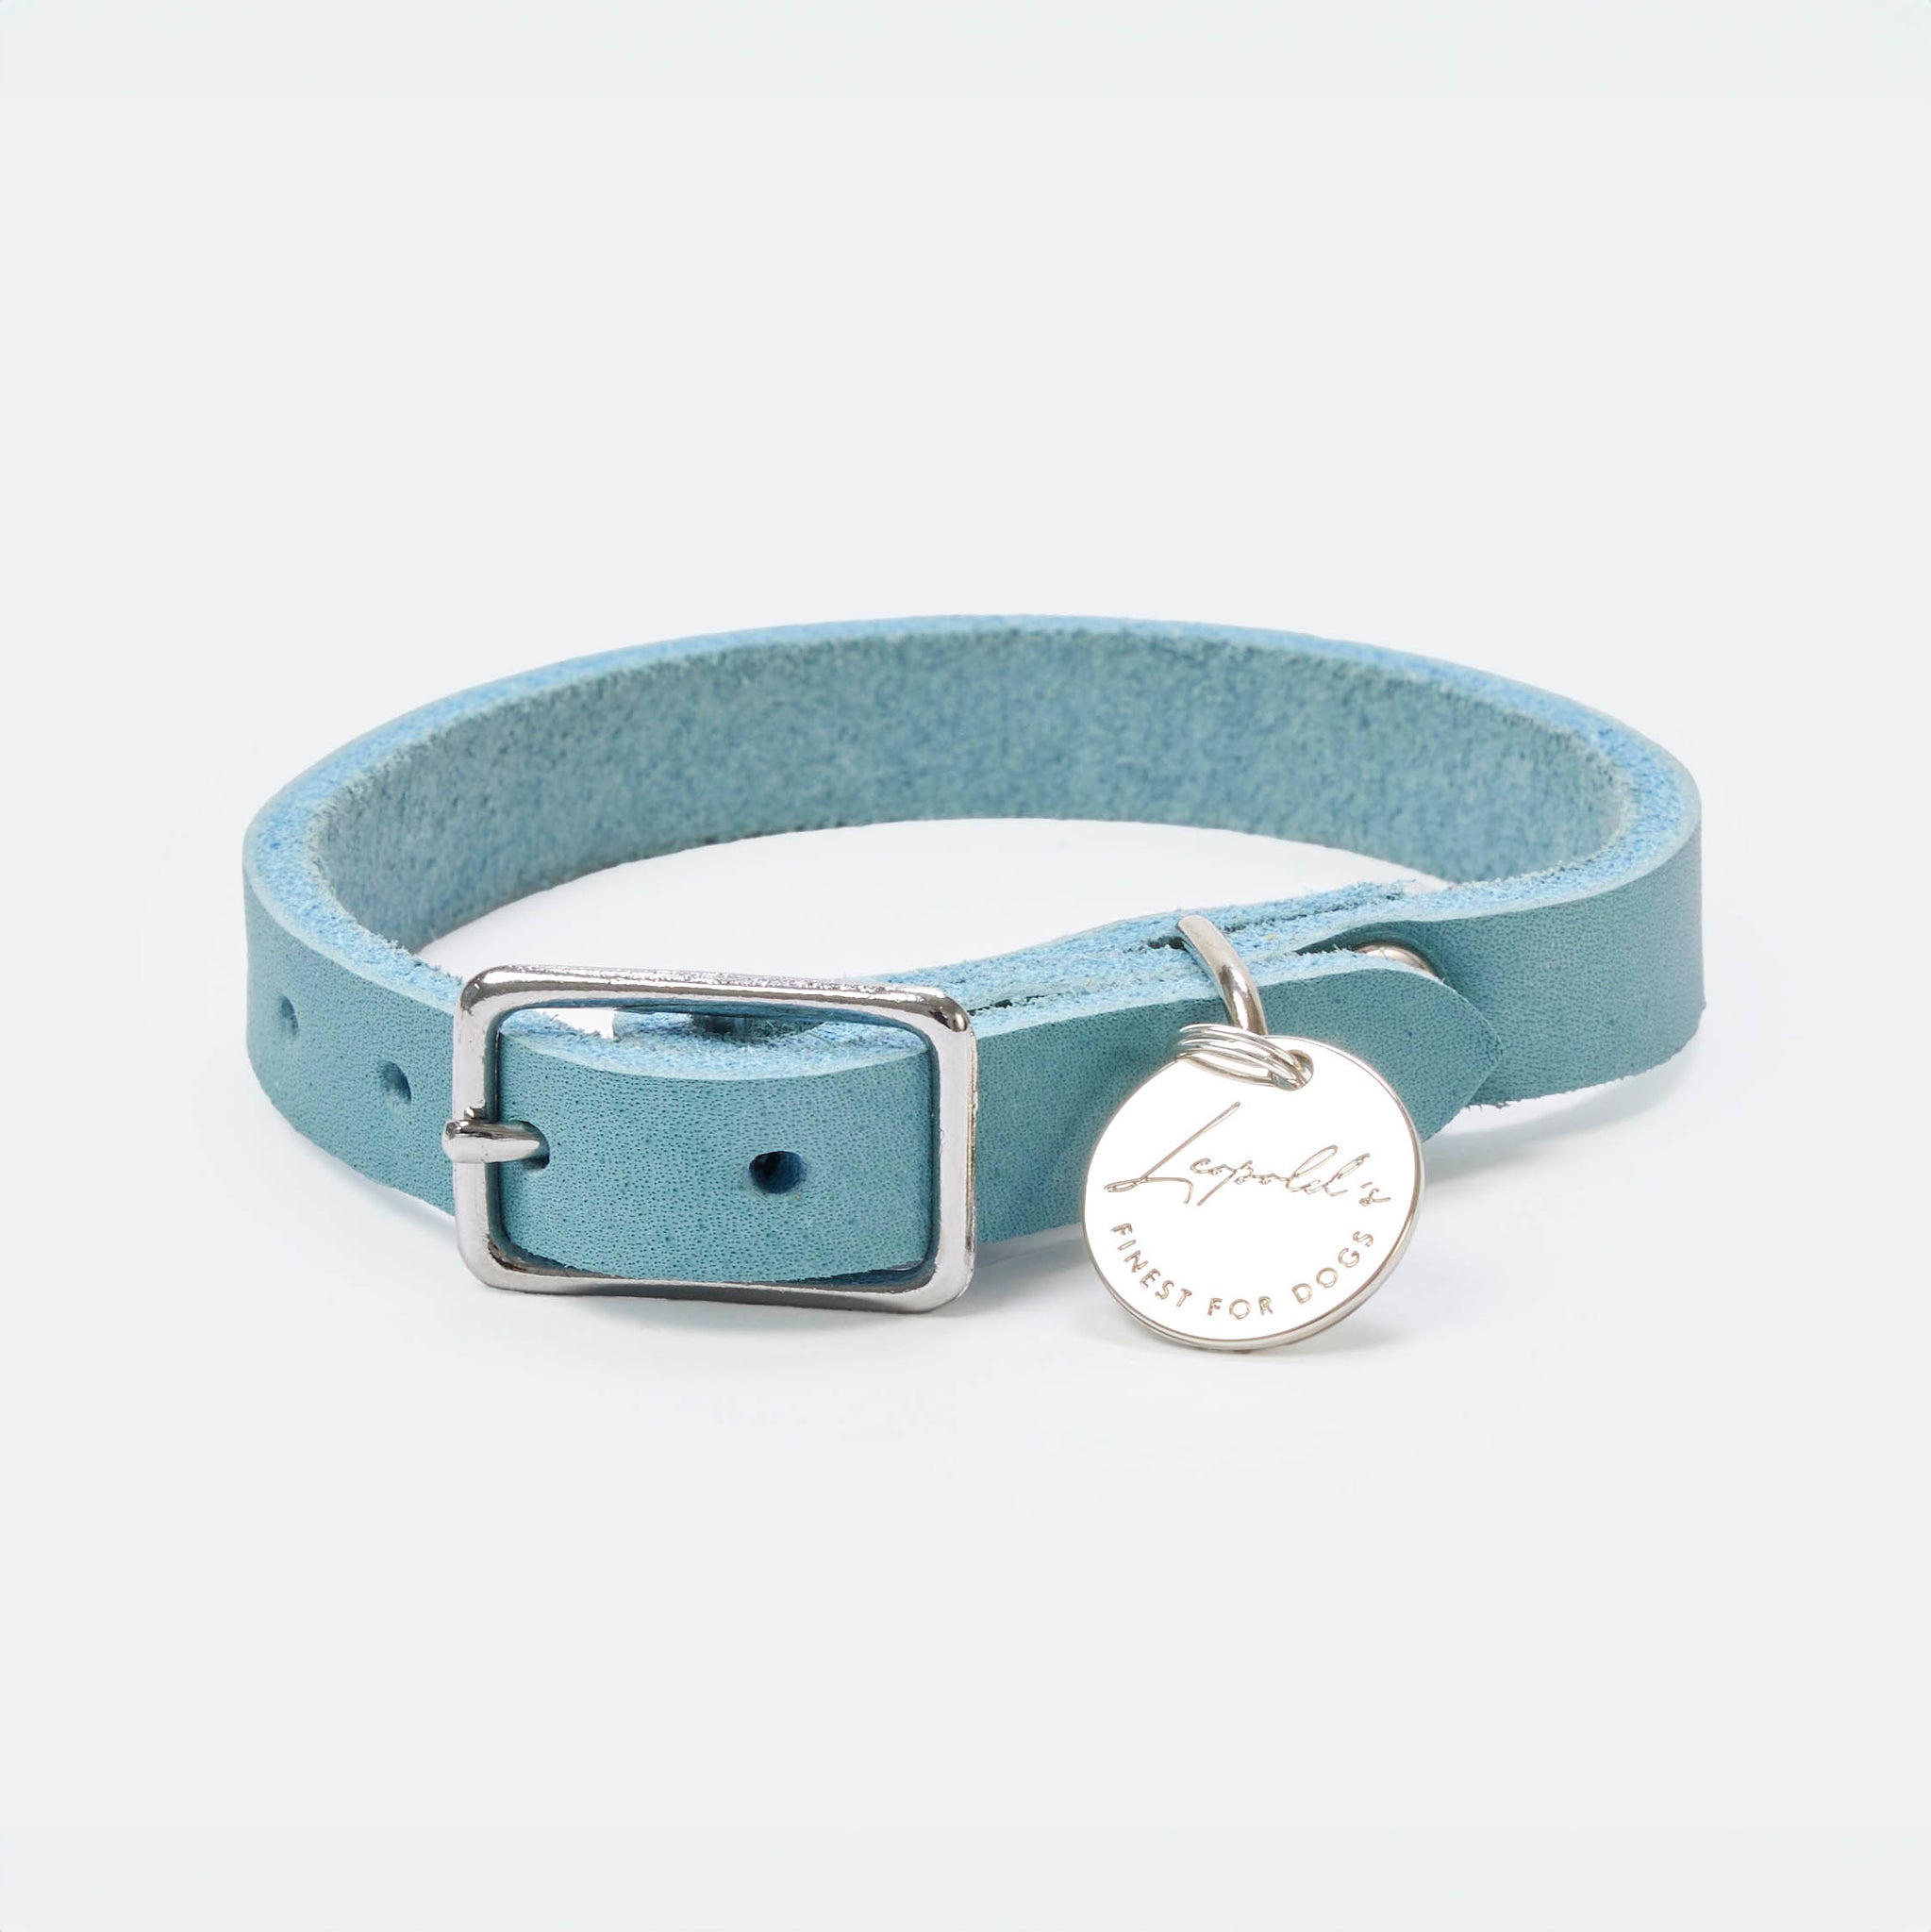 Hundehalsband Fettleder Hellblau-Silber 22-28cm  - von Leopold's kaufen bei leopolds-finest [hellblau-silber]